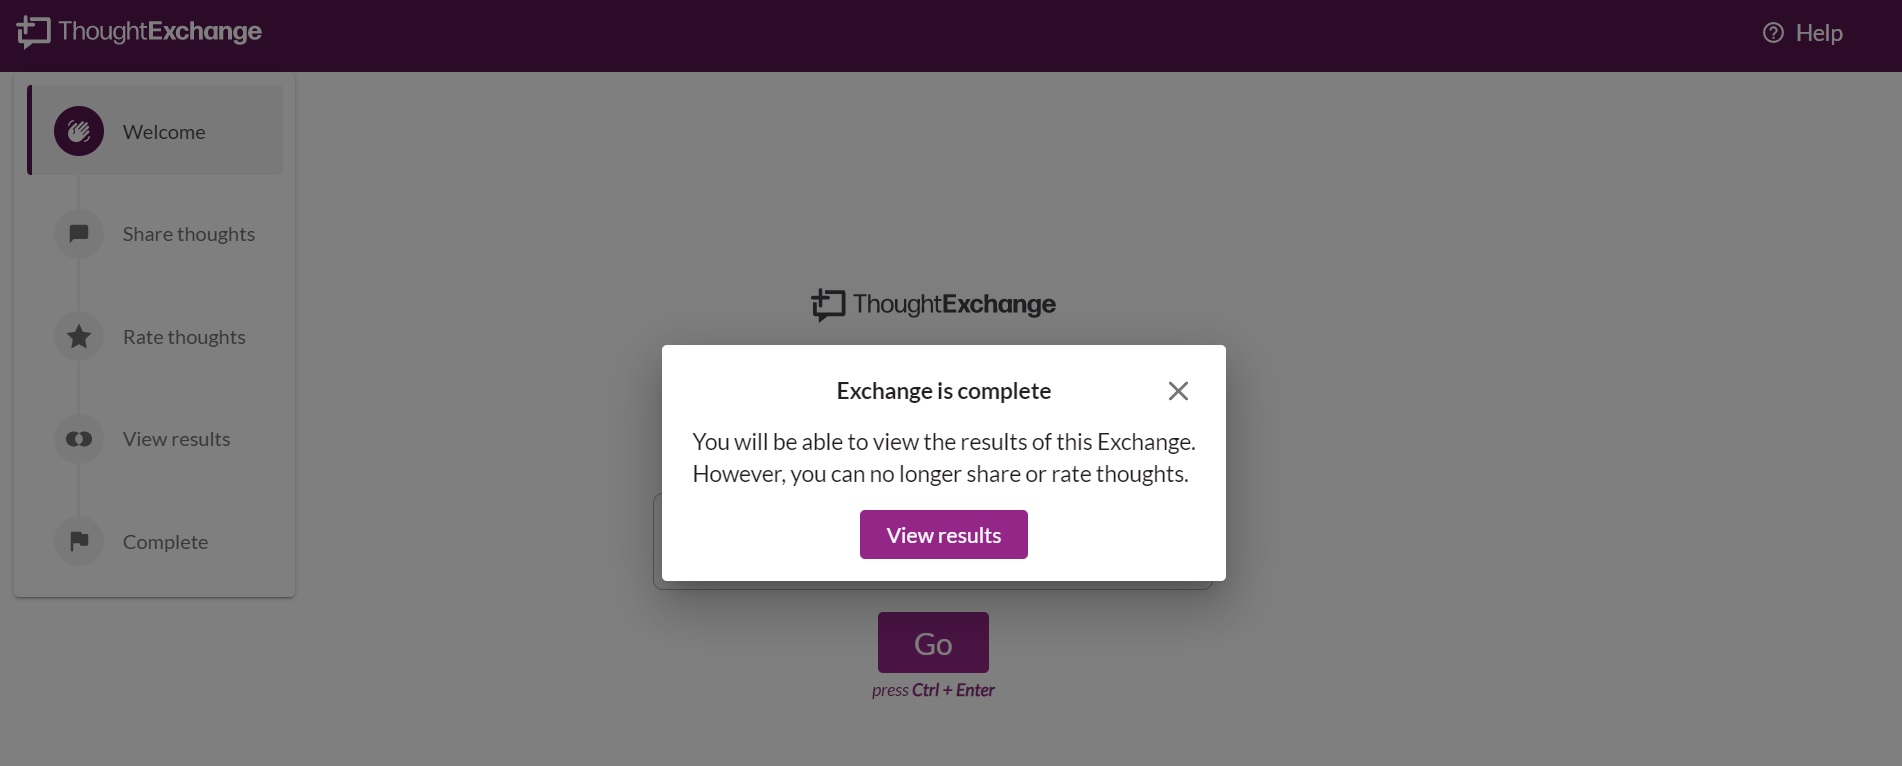 Exchange_Complete_1.jpg